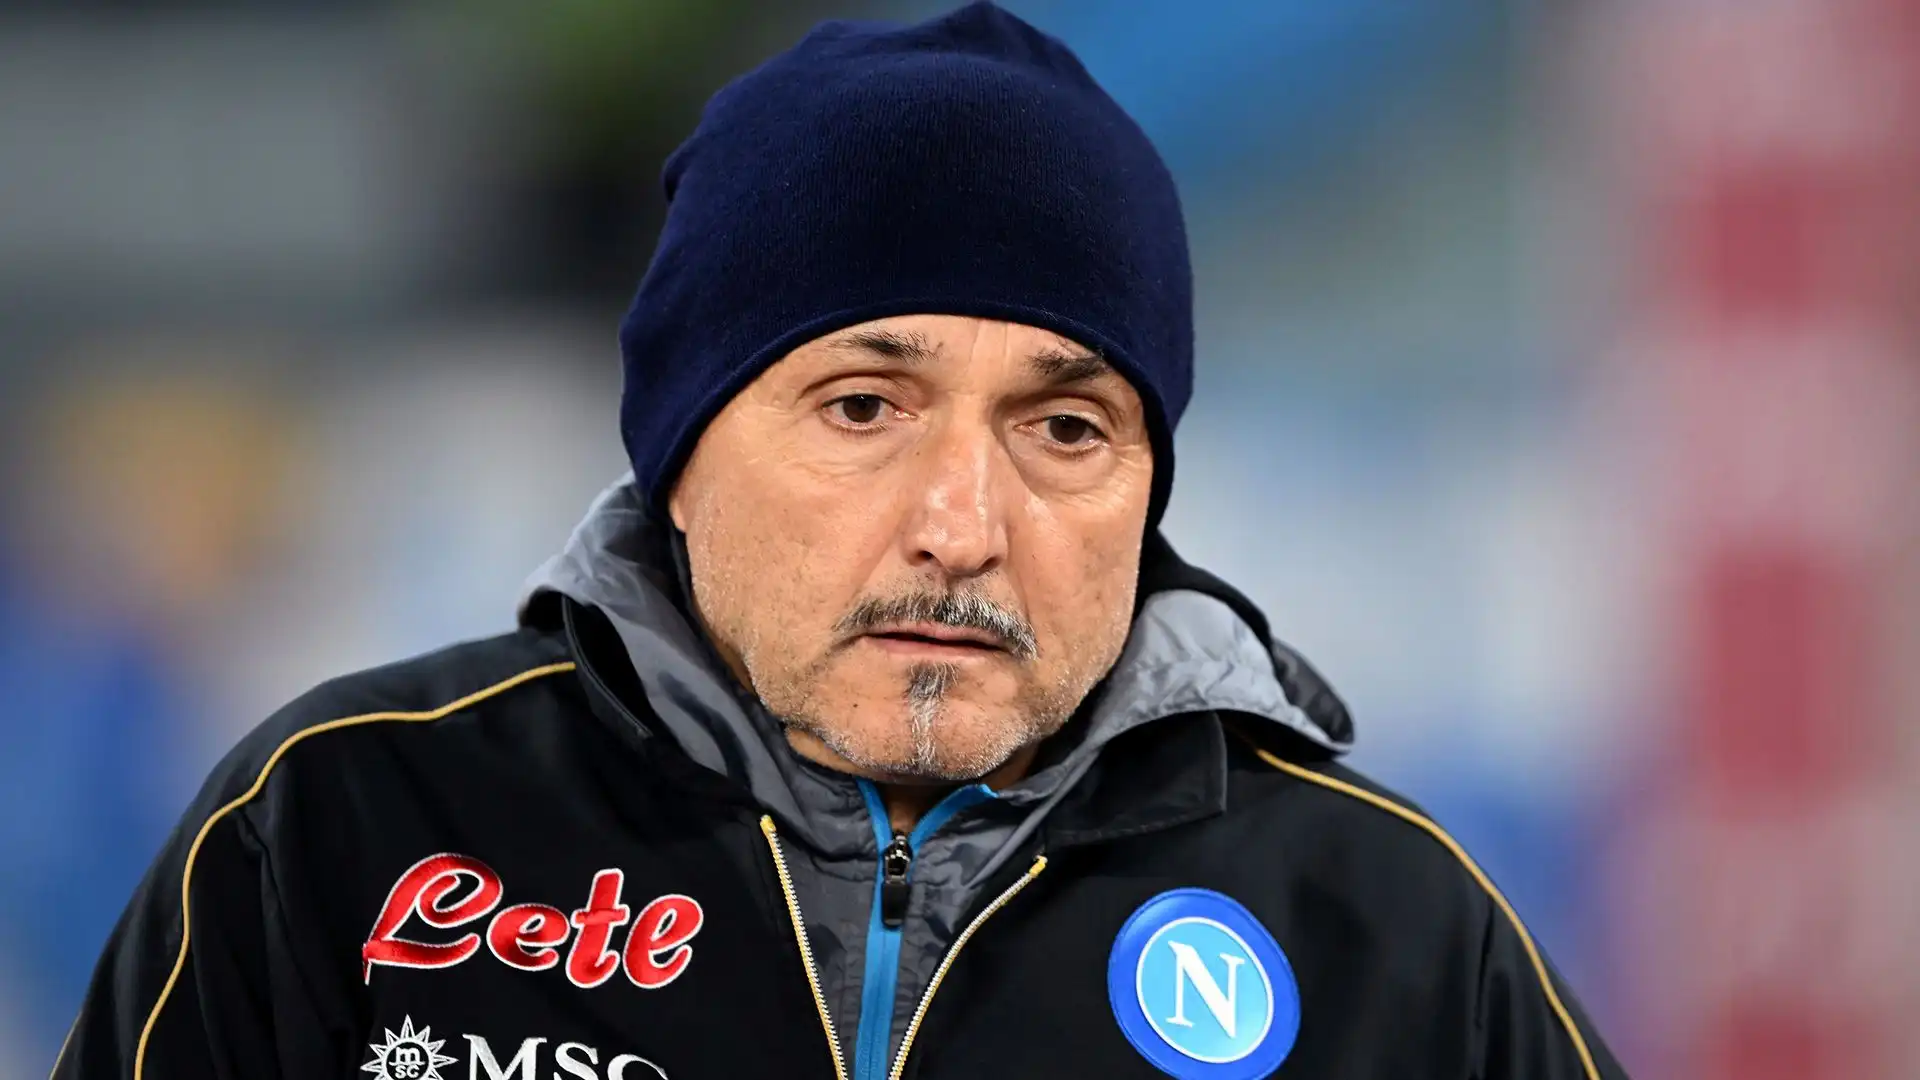 La faccia del tecnico del Napoli sembra perplessa